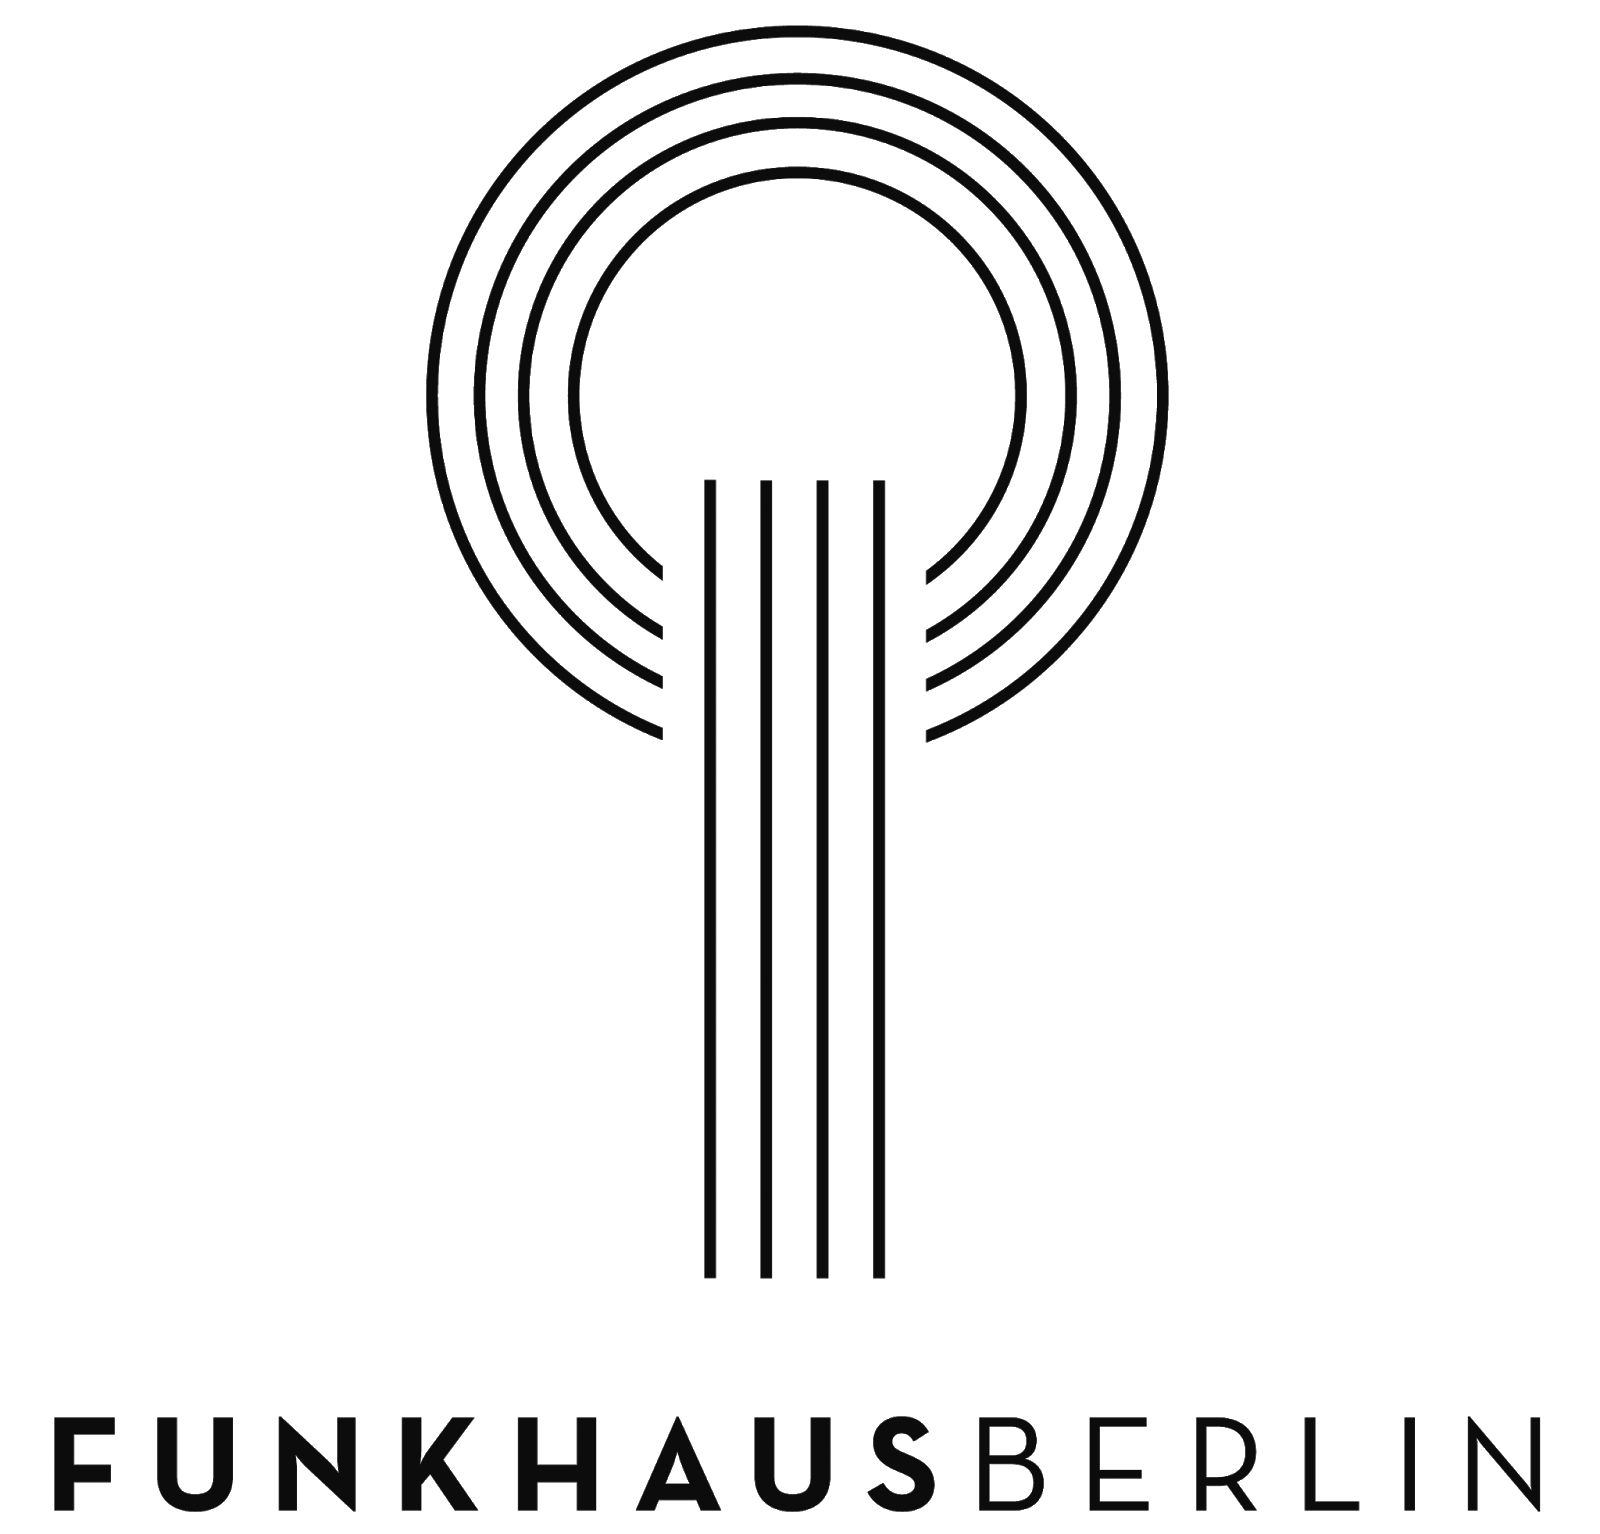 funkhaus_logo_standard copy